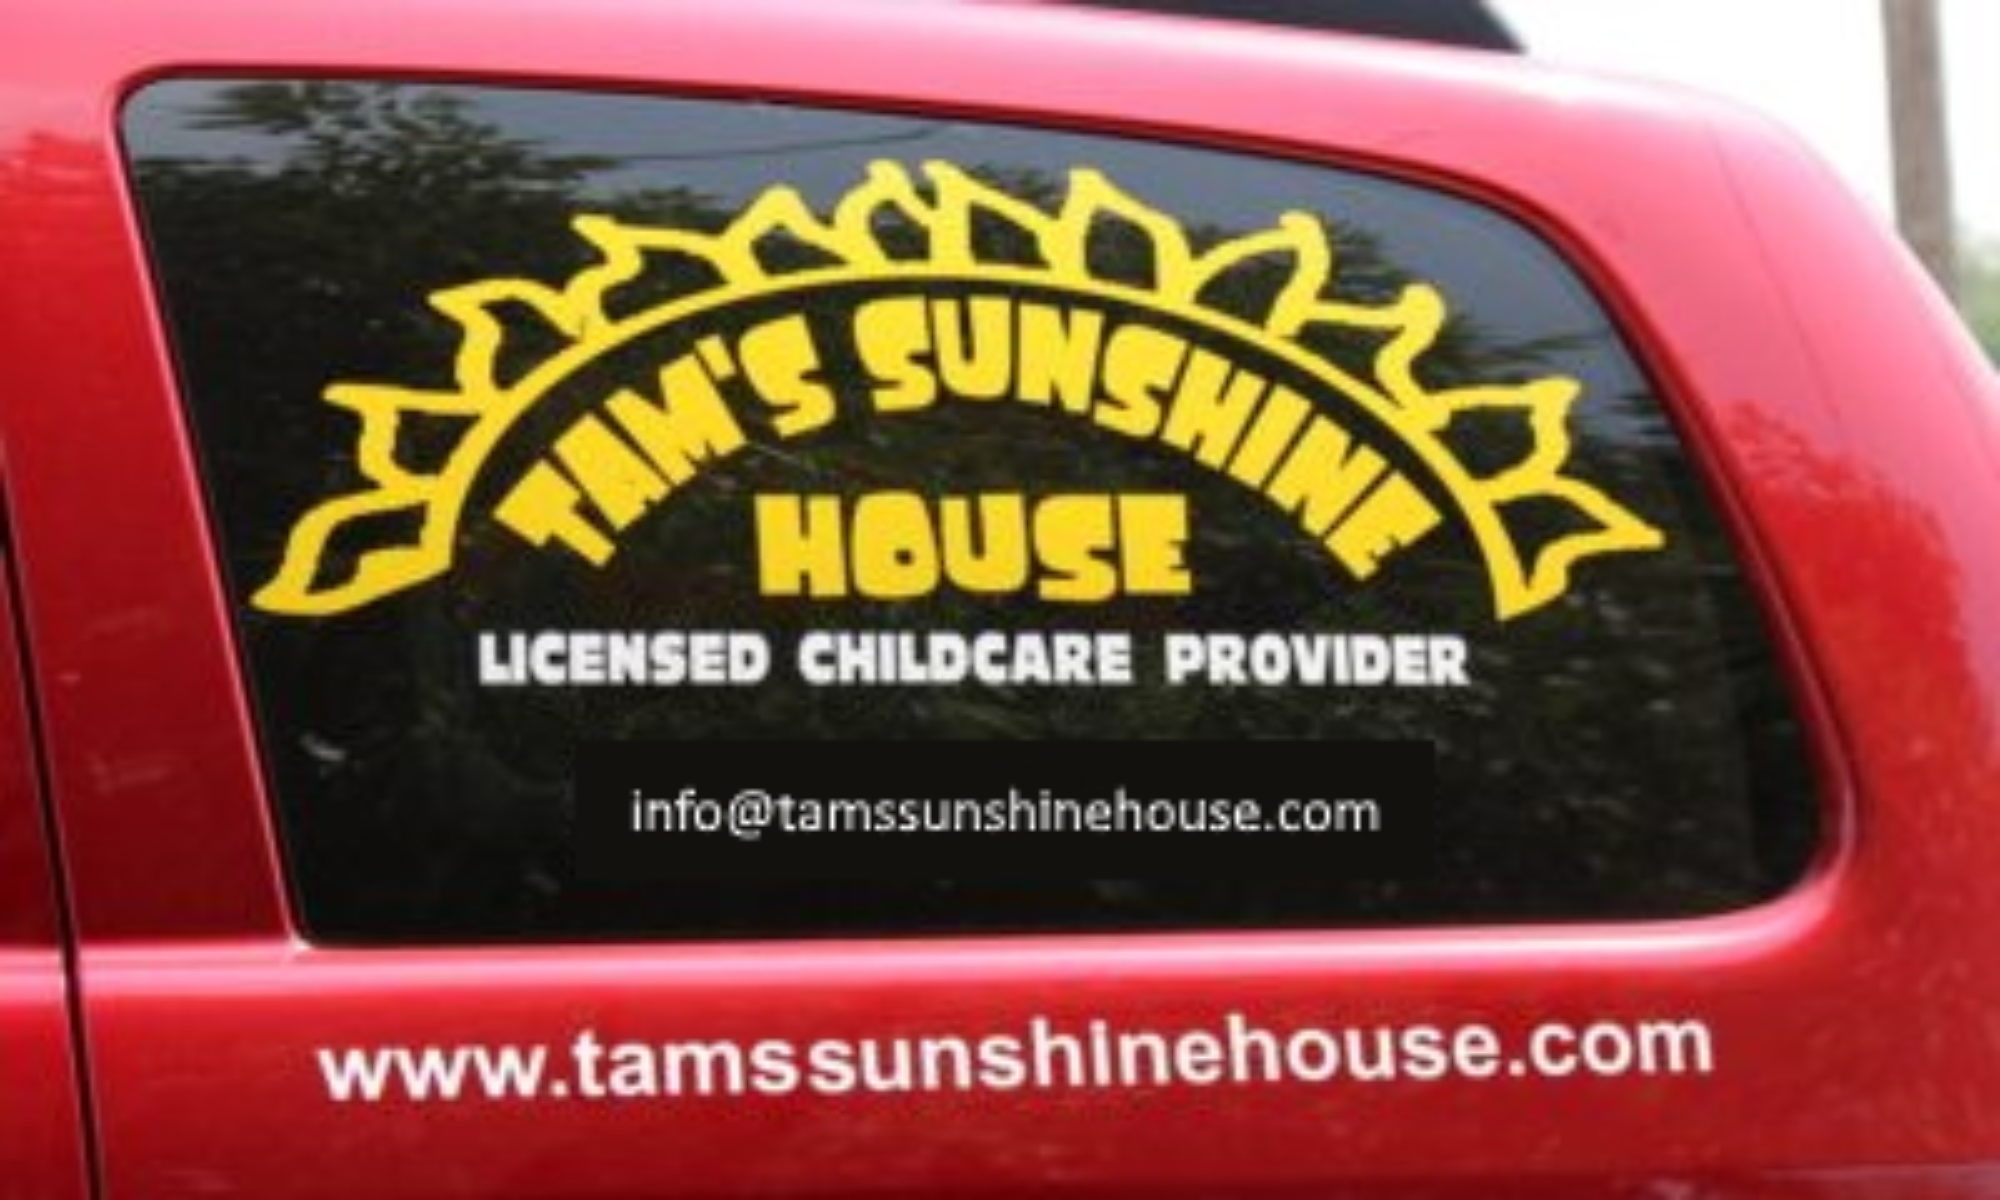 Tam's Sunshine House